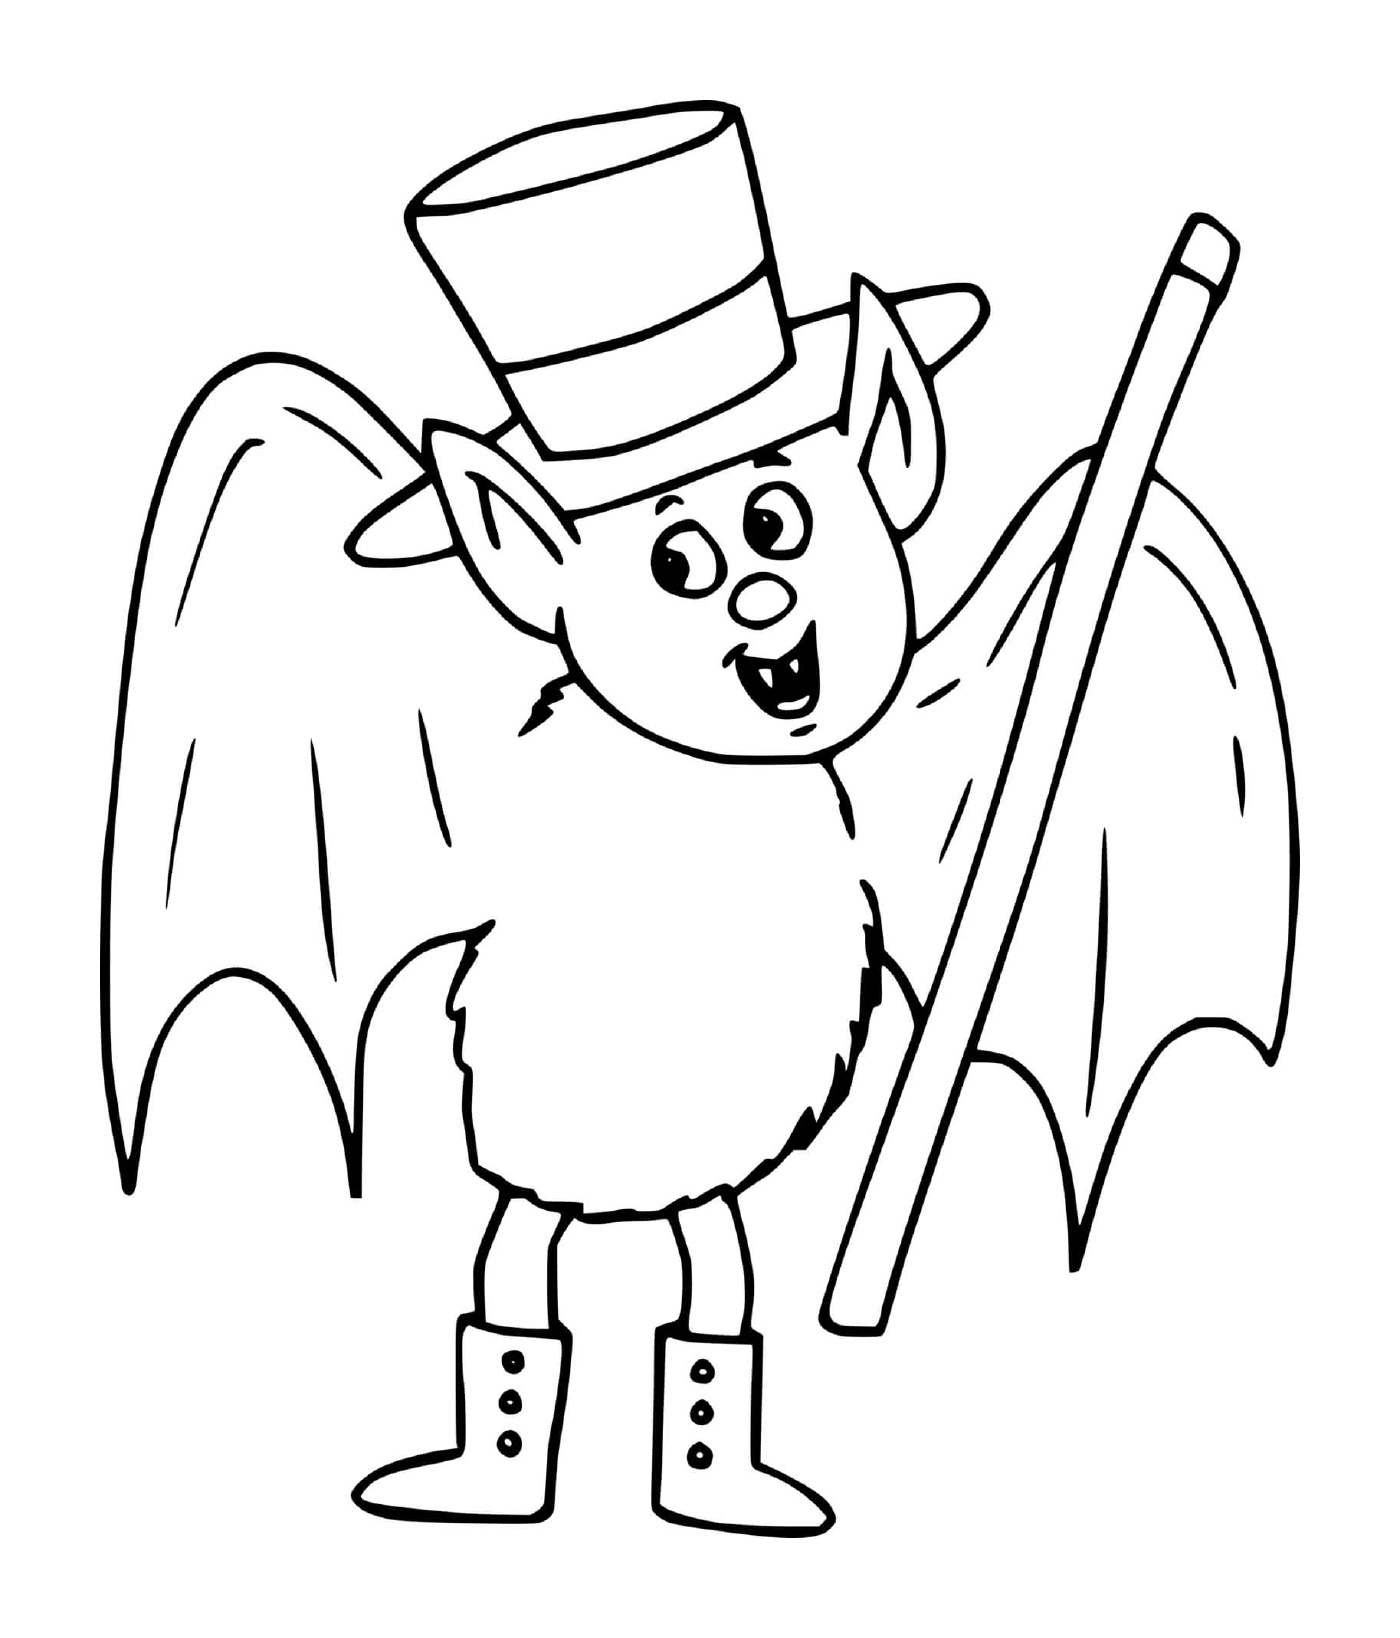  morcego com chapéu de alta forma parecendo um mágico 